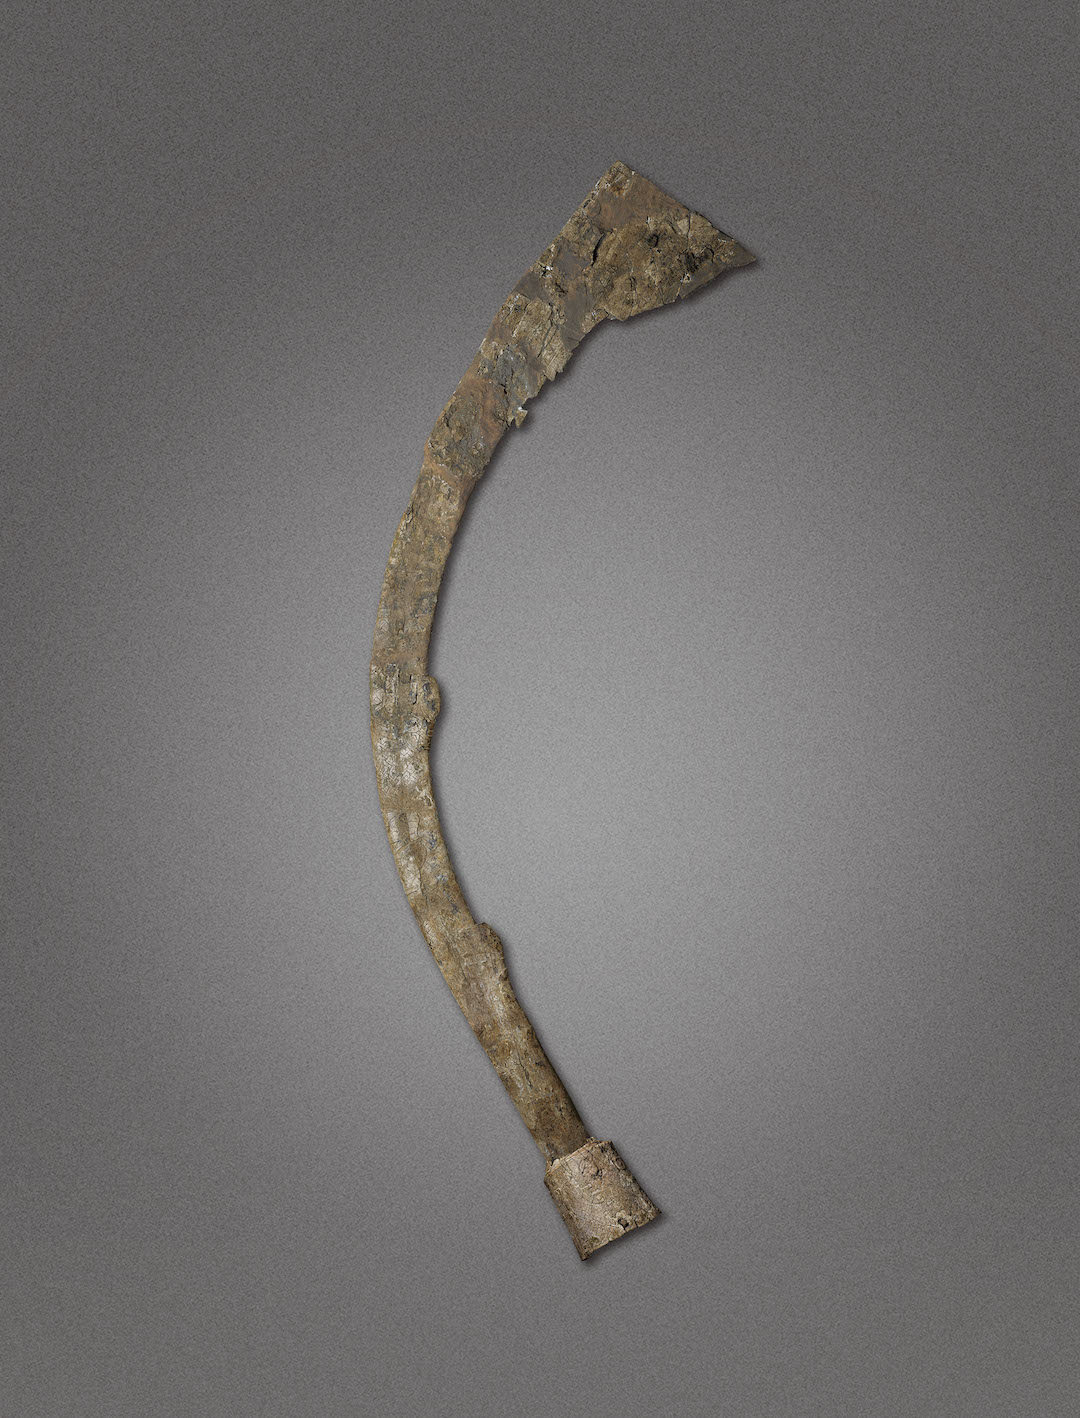 吴家场墓地良渚文化权贵大墓Ｍ207出土的迄今为止保存最为完整的象牙权杖